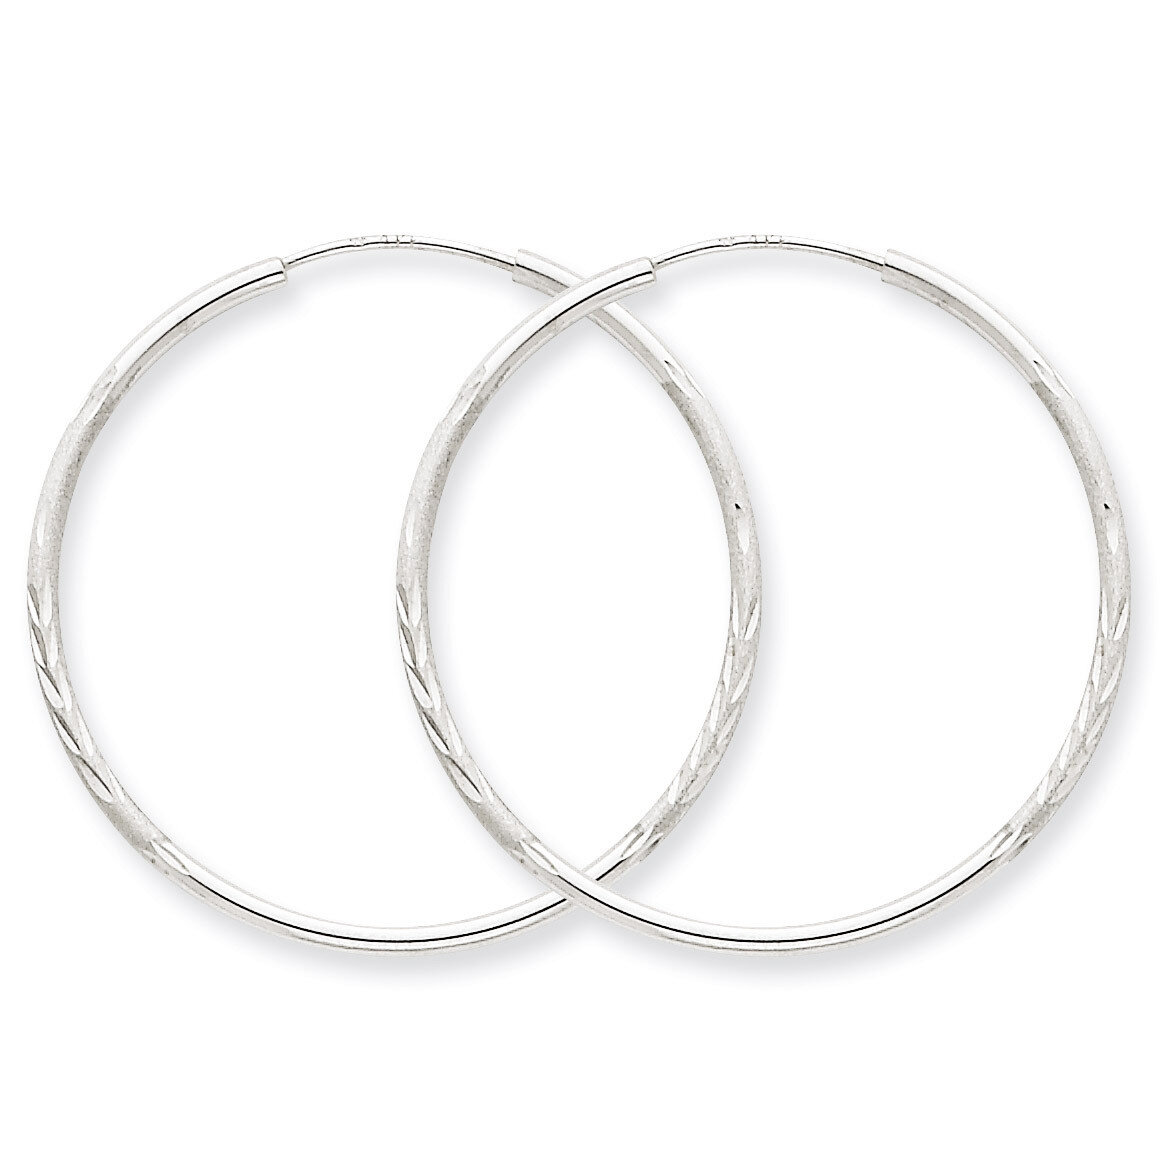 1.5mm Diamond-cut Endless Hoop Earrings 14k White Gold XY1194